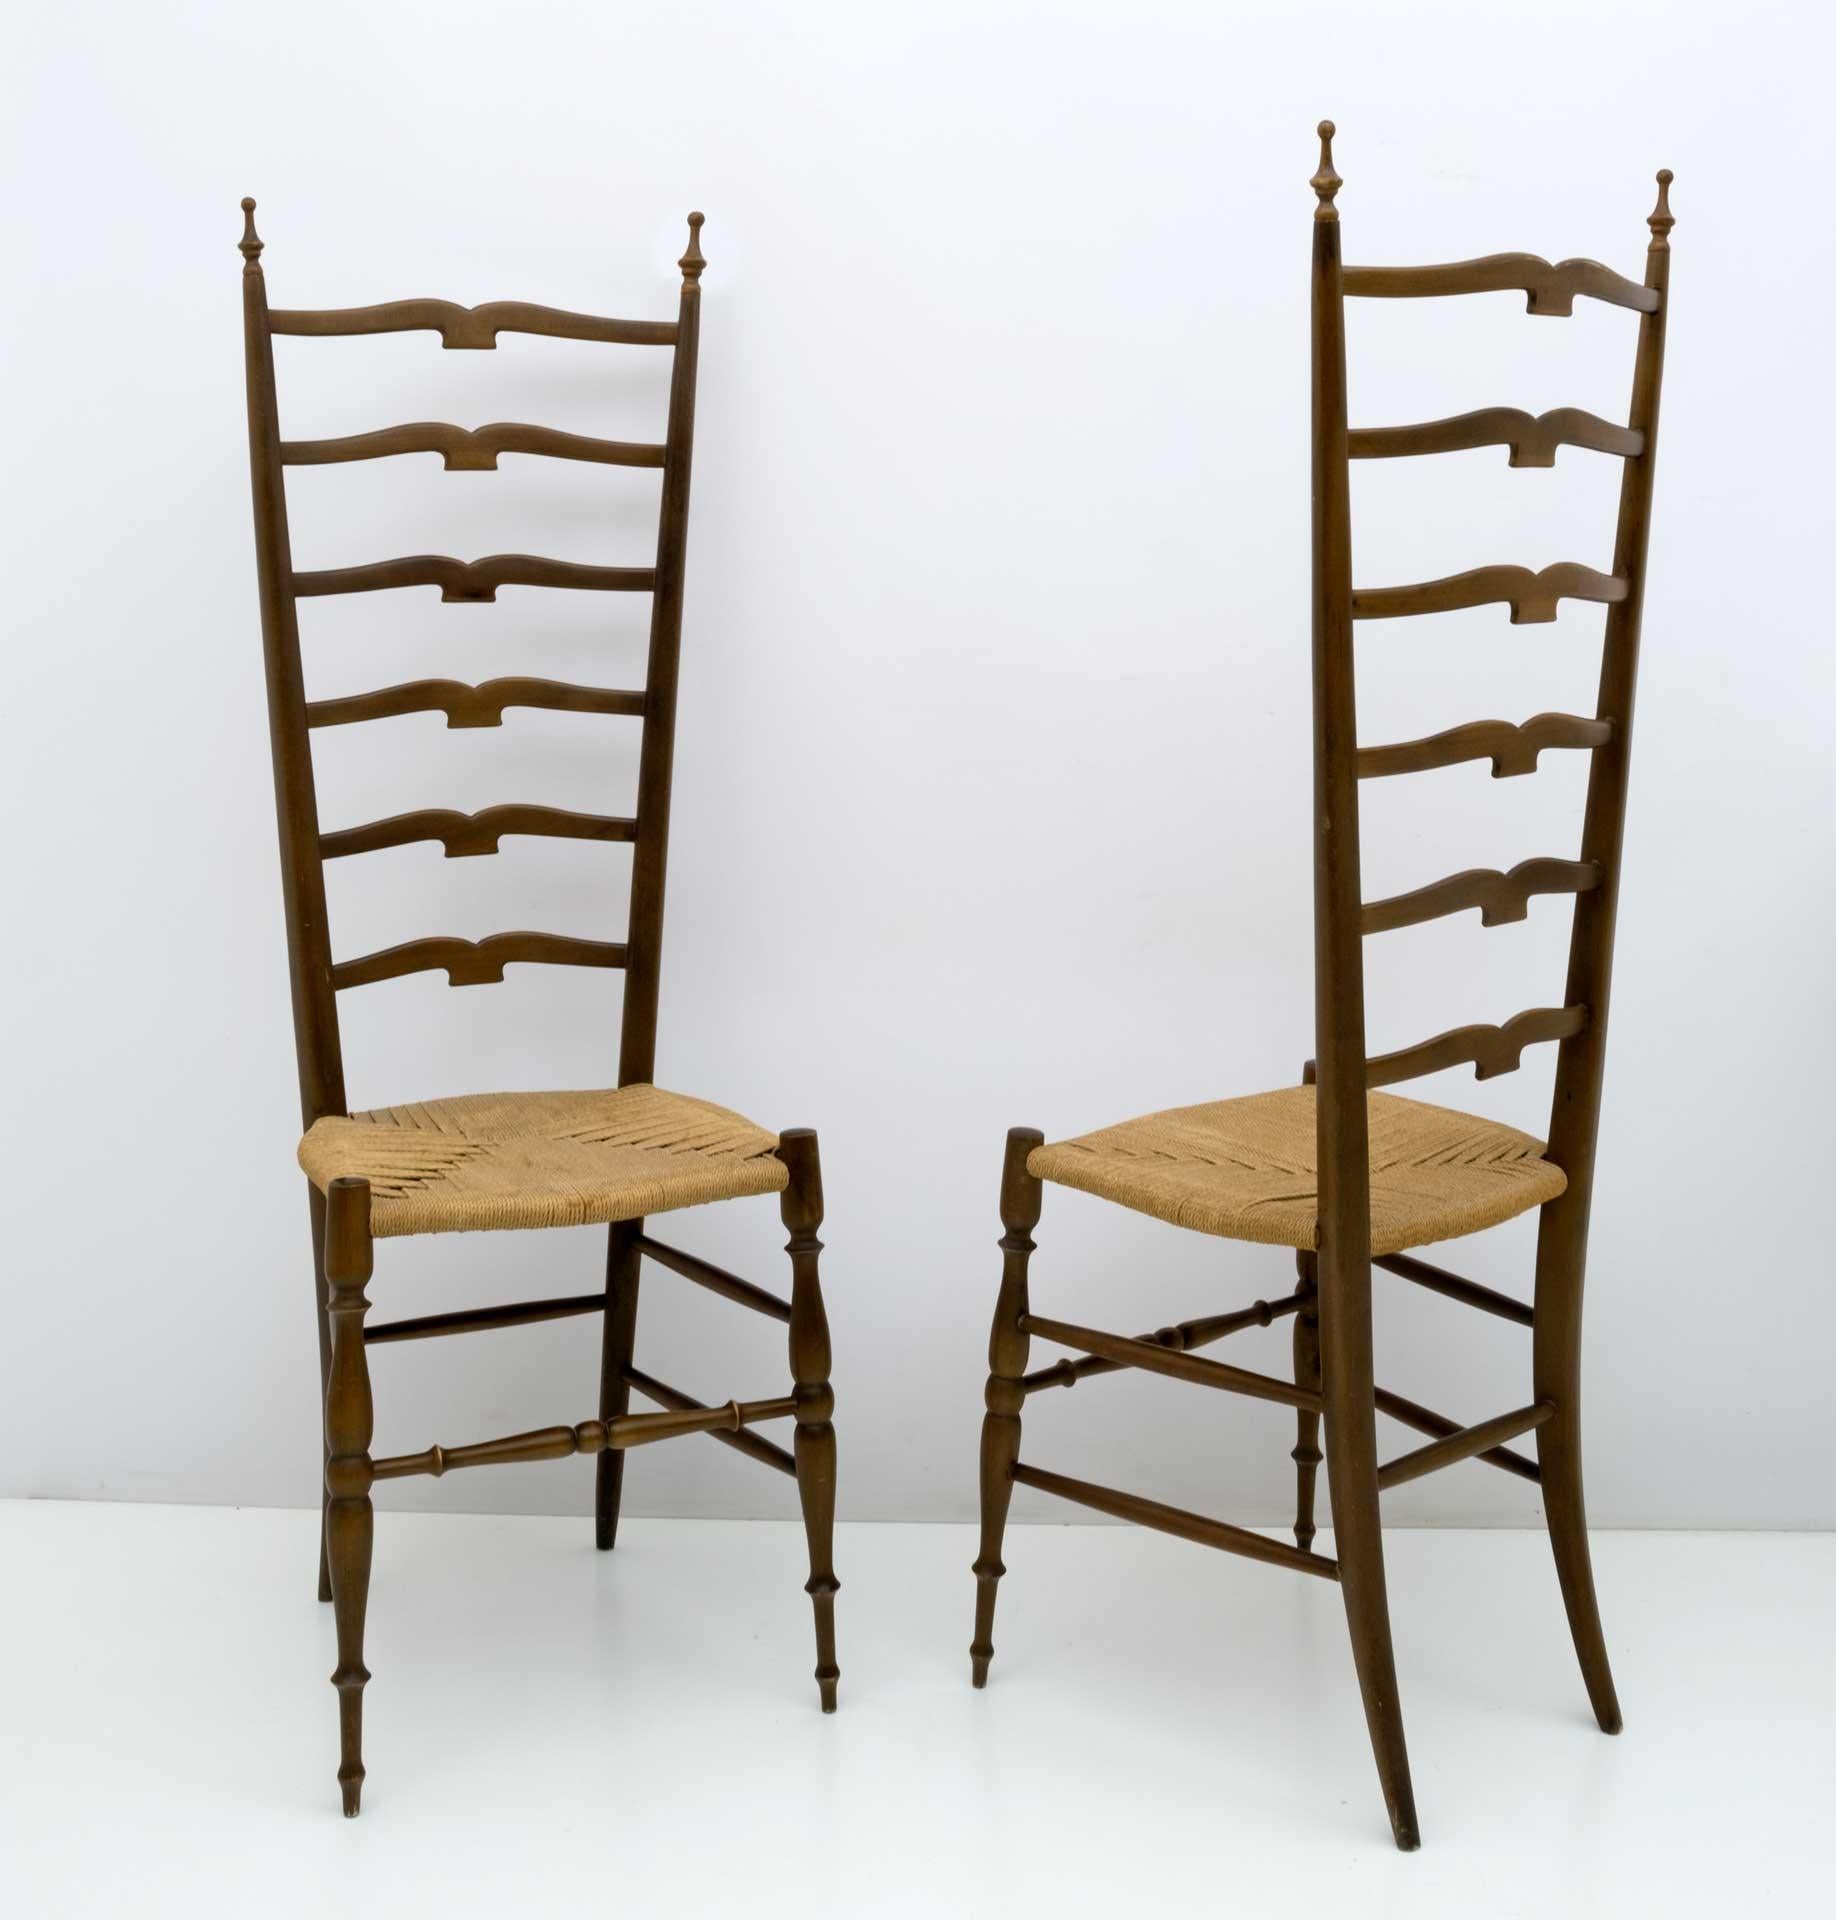 Paire de superbes chaises à haut dossier en hêtre teinté noyer clair avec assise en corde de jute d'origine. Ces pièces étonnantes ont été conçues par Paolo Buffa Chiavari dans les années 1950 en Italie.